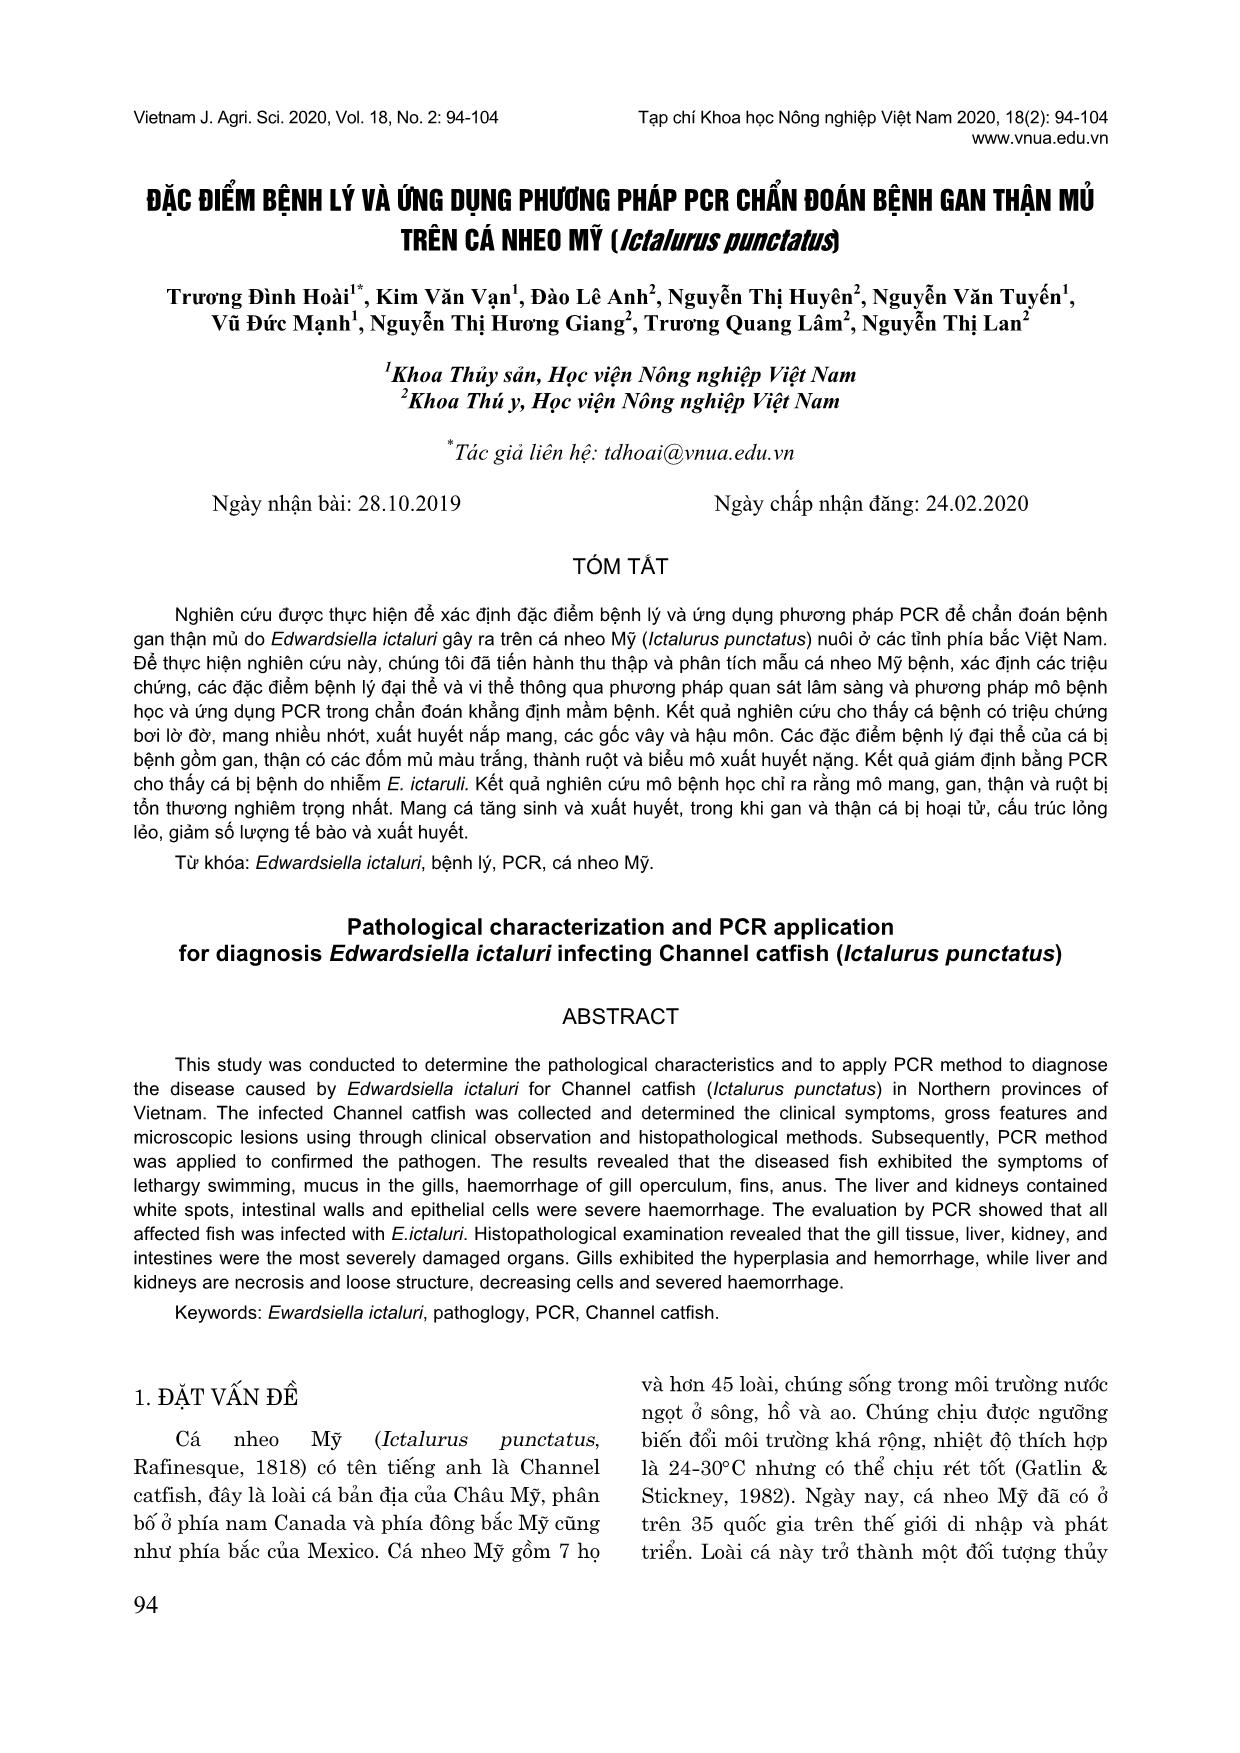 Đặc điểm bệnh lý và ứng dụng phương pháp PCR chẩn đoán bệnh gan thận mủ trên cá nheo Mỹ (Ictalurus punctatus) trang 1